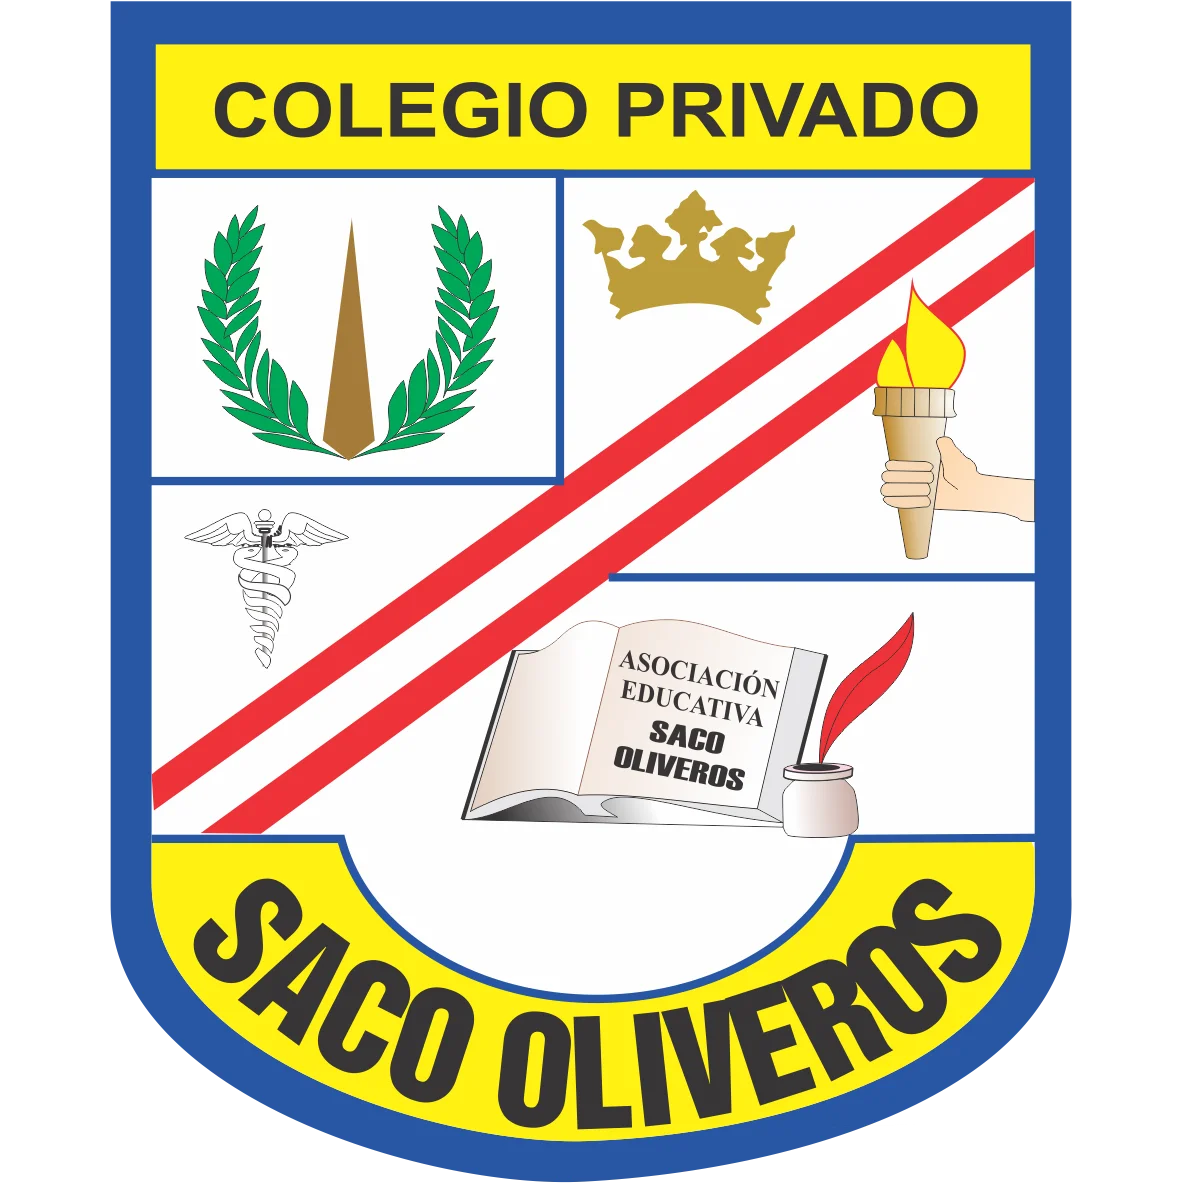 Colegio Privado Saco Oliveros